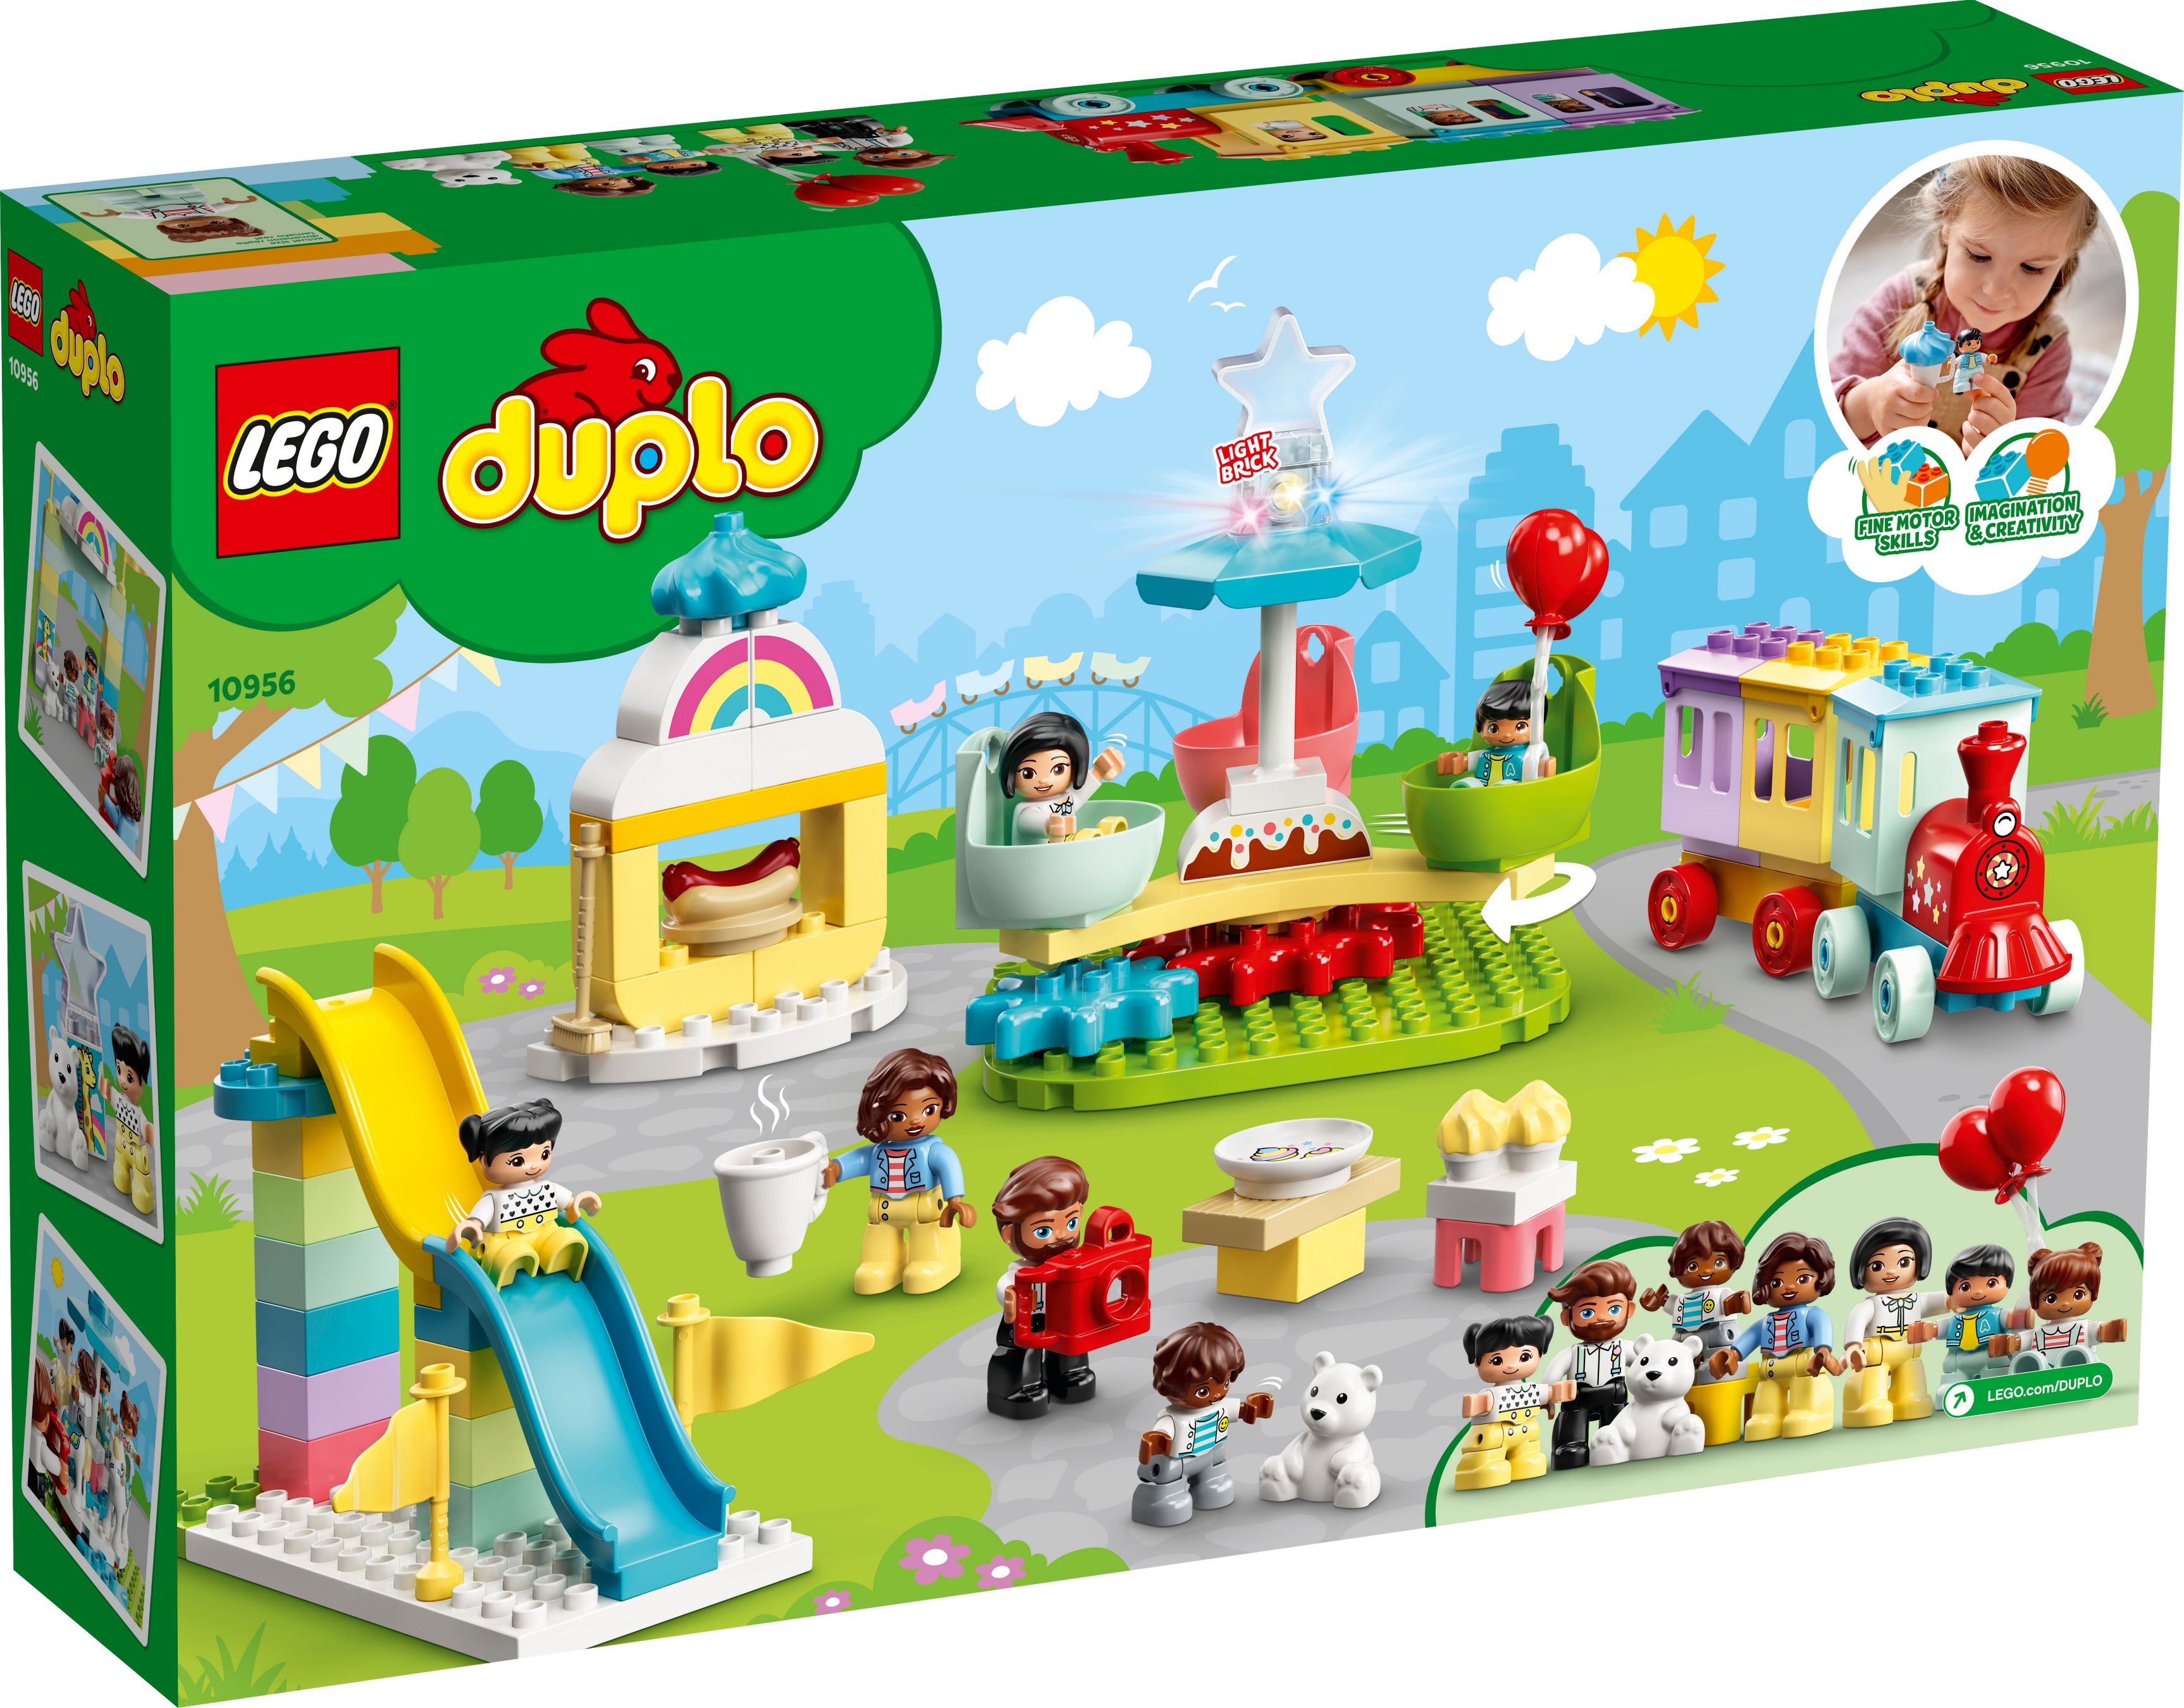 LEGO Duplo 10956 Erlebnispark LEGO_10956_alt6.jpg